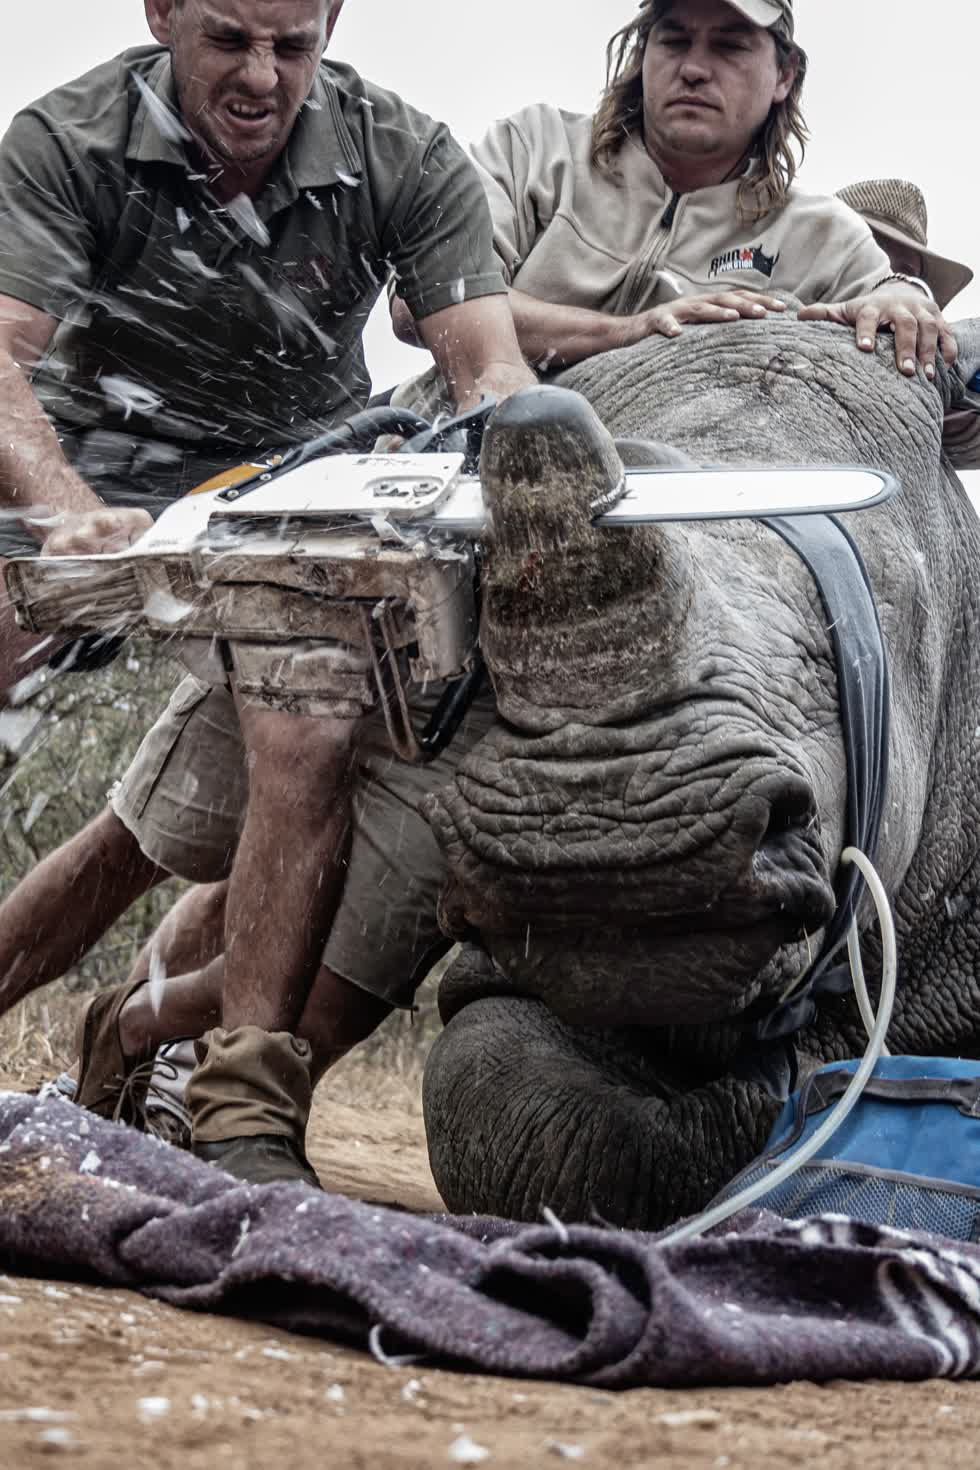 Con tê giác này đang được các nhân viên bảo tồn cưa sừng để giúp nó tránh bị giết hại bởi những kẻ săn trộm. Tê giác Nam Phi đối mặt với nguy cơ tuyệt chủng do bị săn bắt để khai thác sừng, phục vụ cho nhu cầu ở Trung Quốc và Việt Nam. Ảnh: Neville Ngomane.